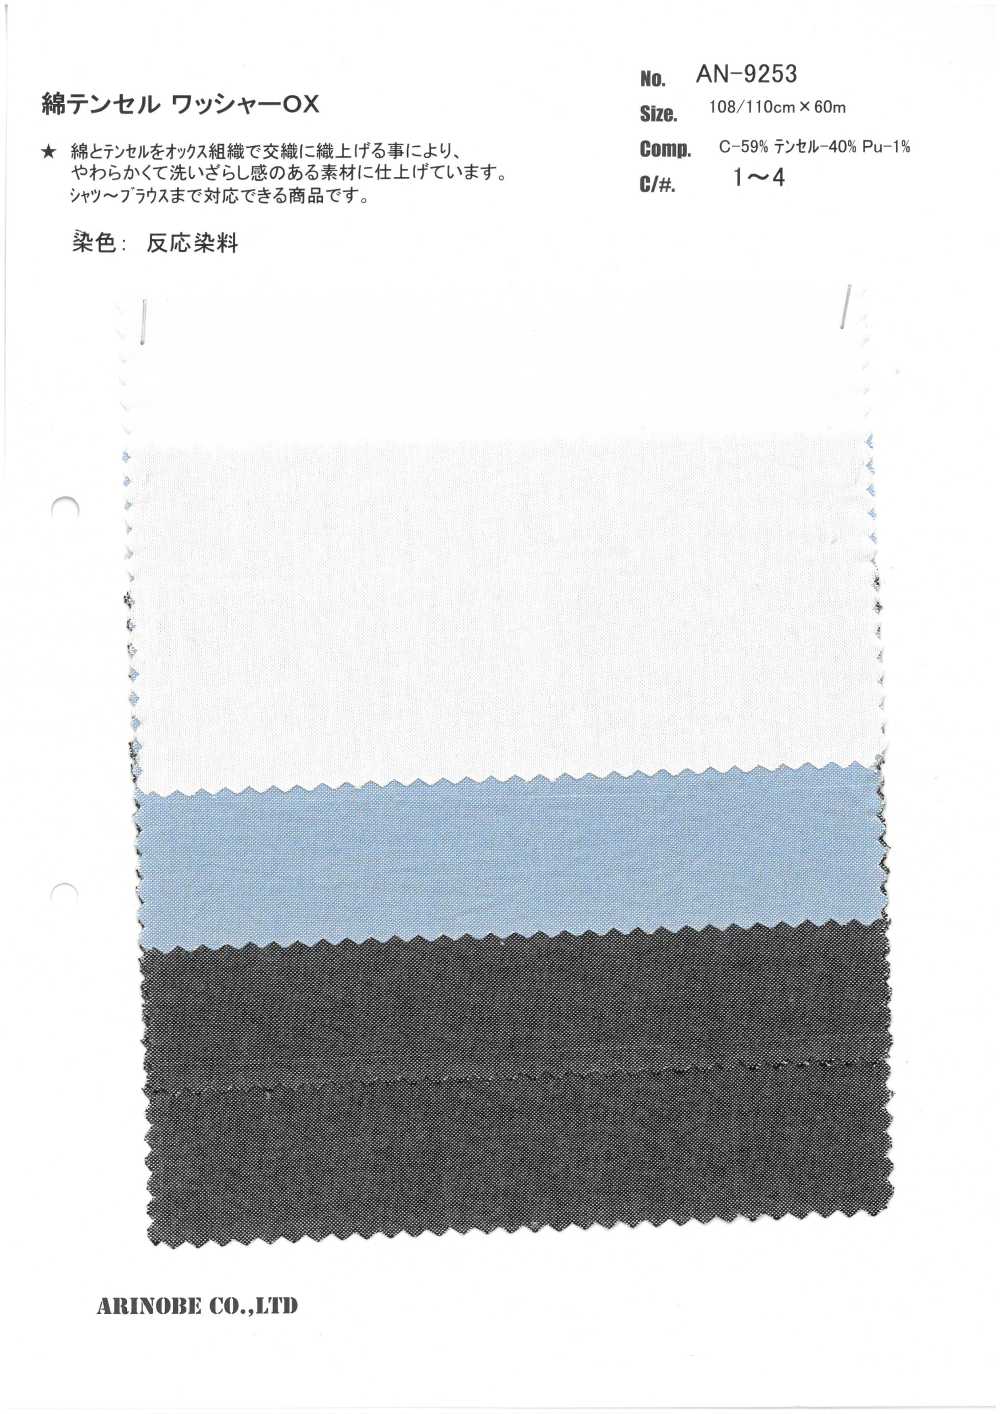 AN-9253 Lavaggio Cotone / Tencel Lavorazione OX[Tessile / Tessuto] ARINOBE CO., LTD.